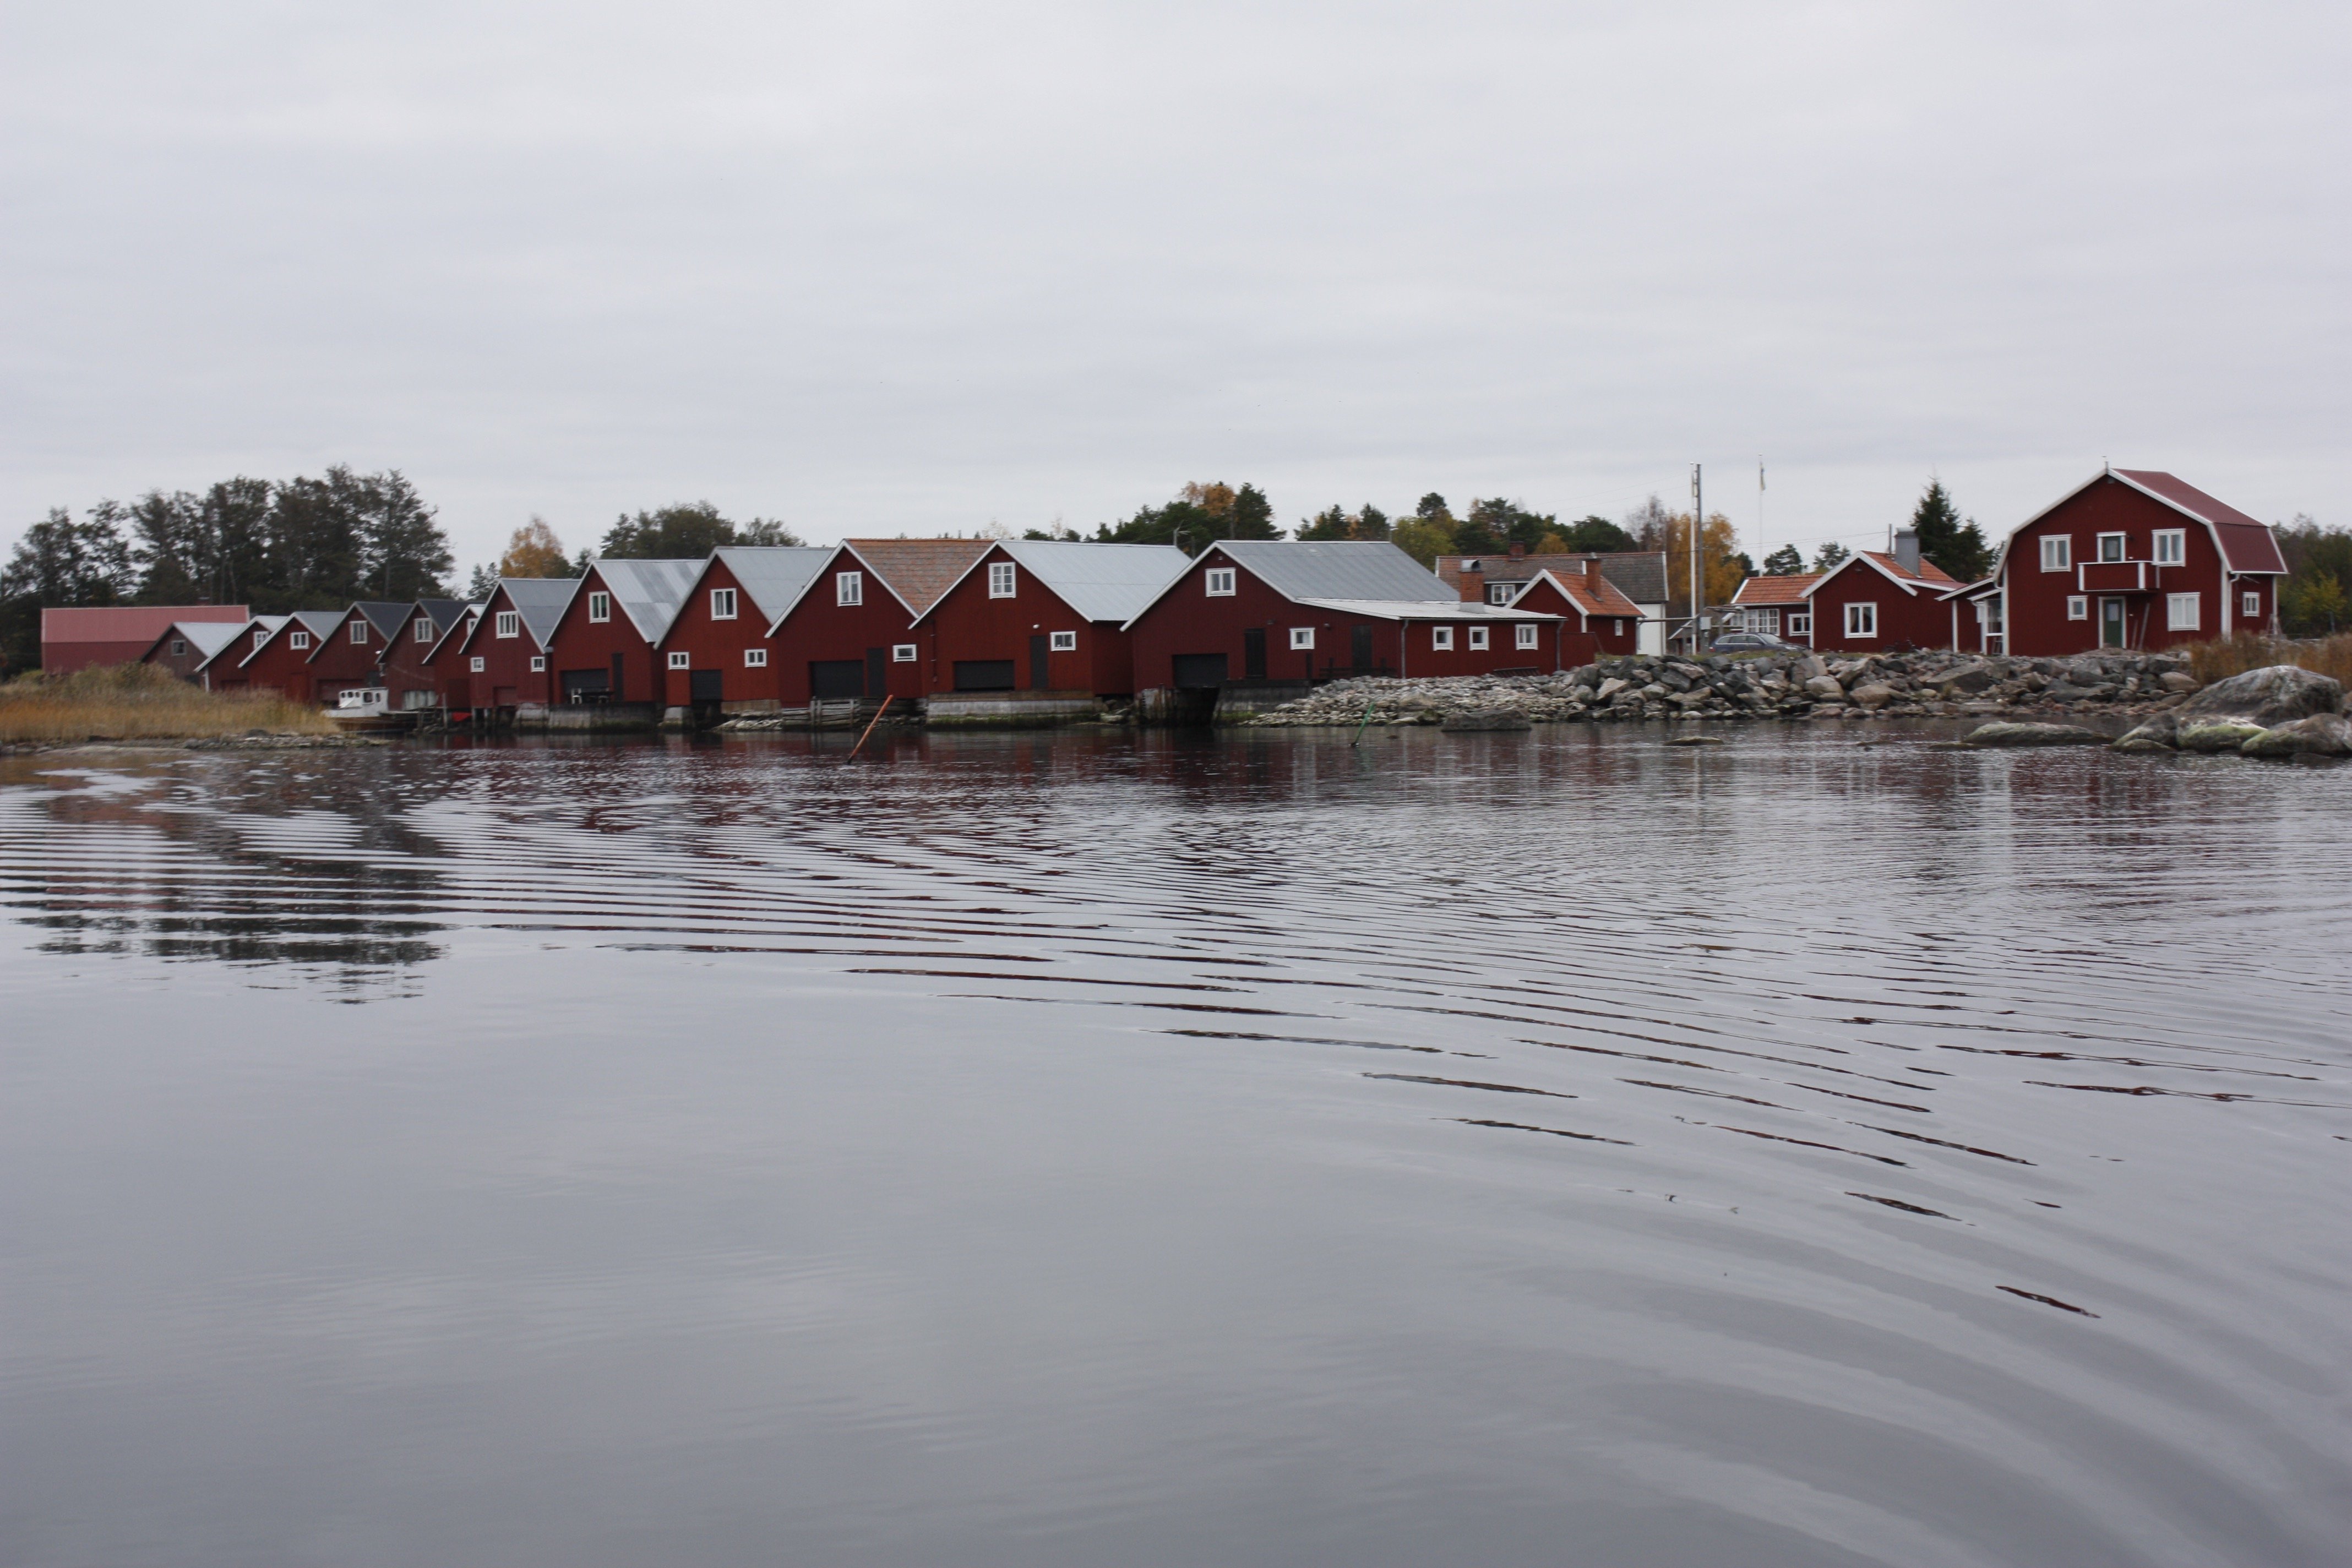 Vid vattenbrynet står flera båthus på rad bredvid varandra. Bakom dem står flera bostadshus och bodar.